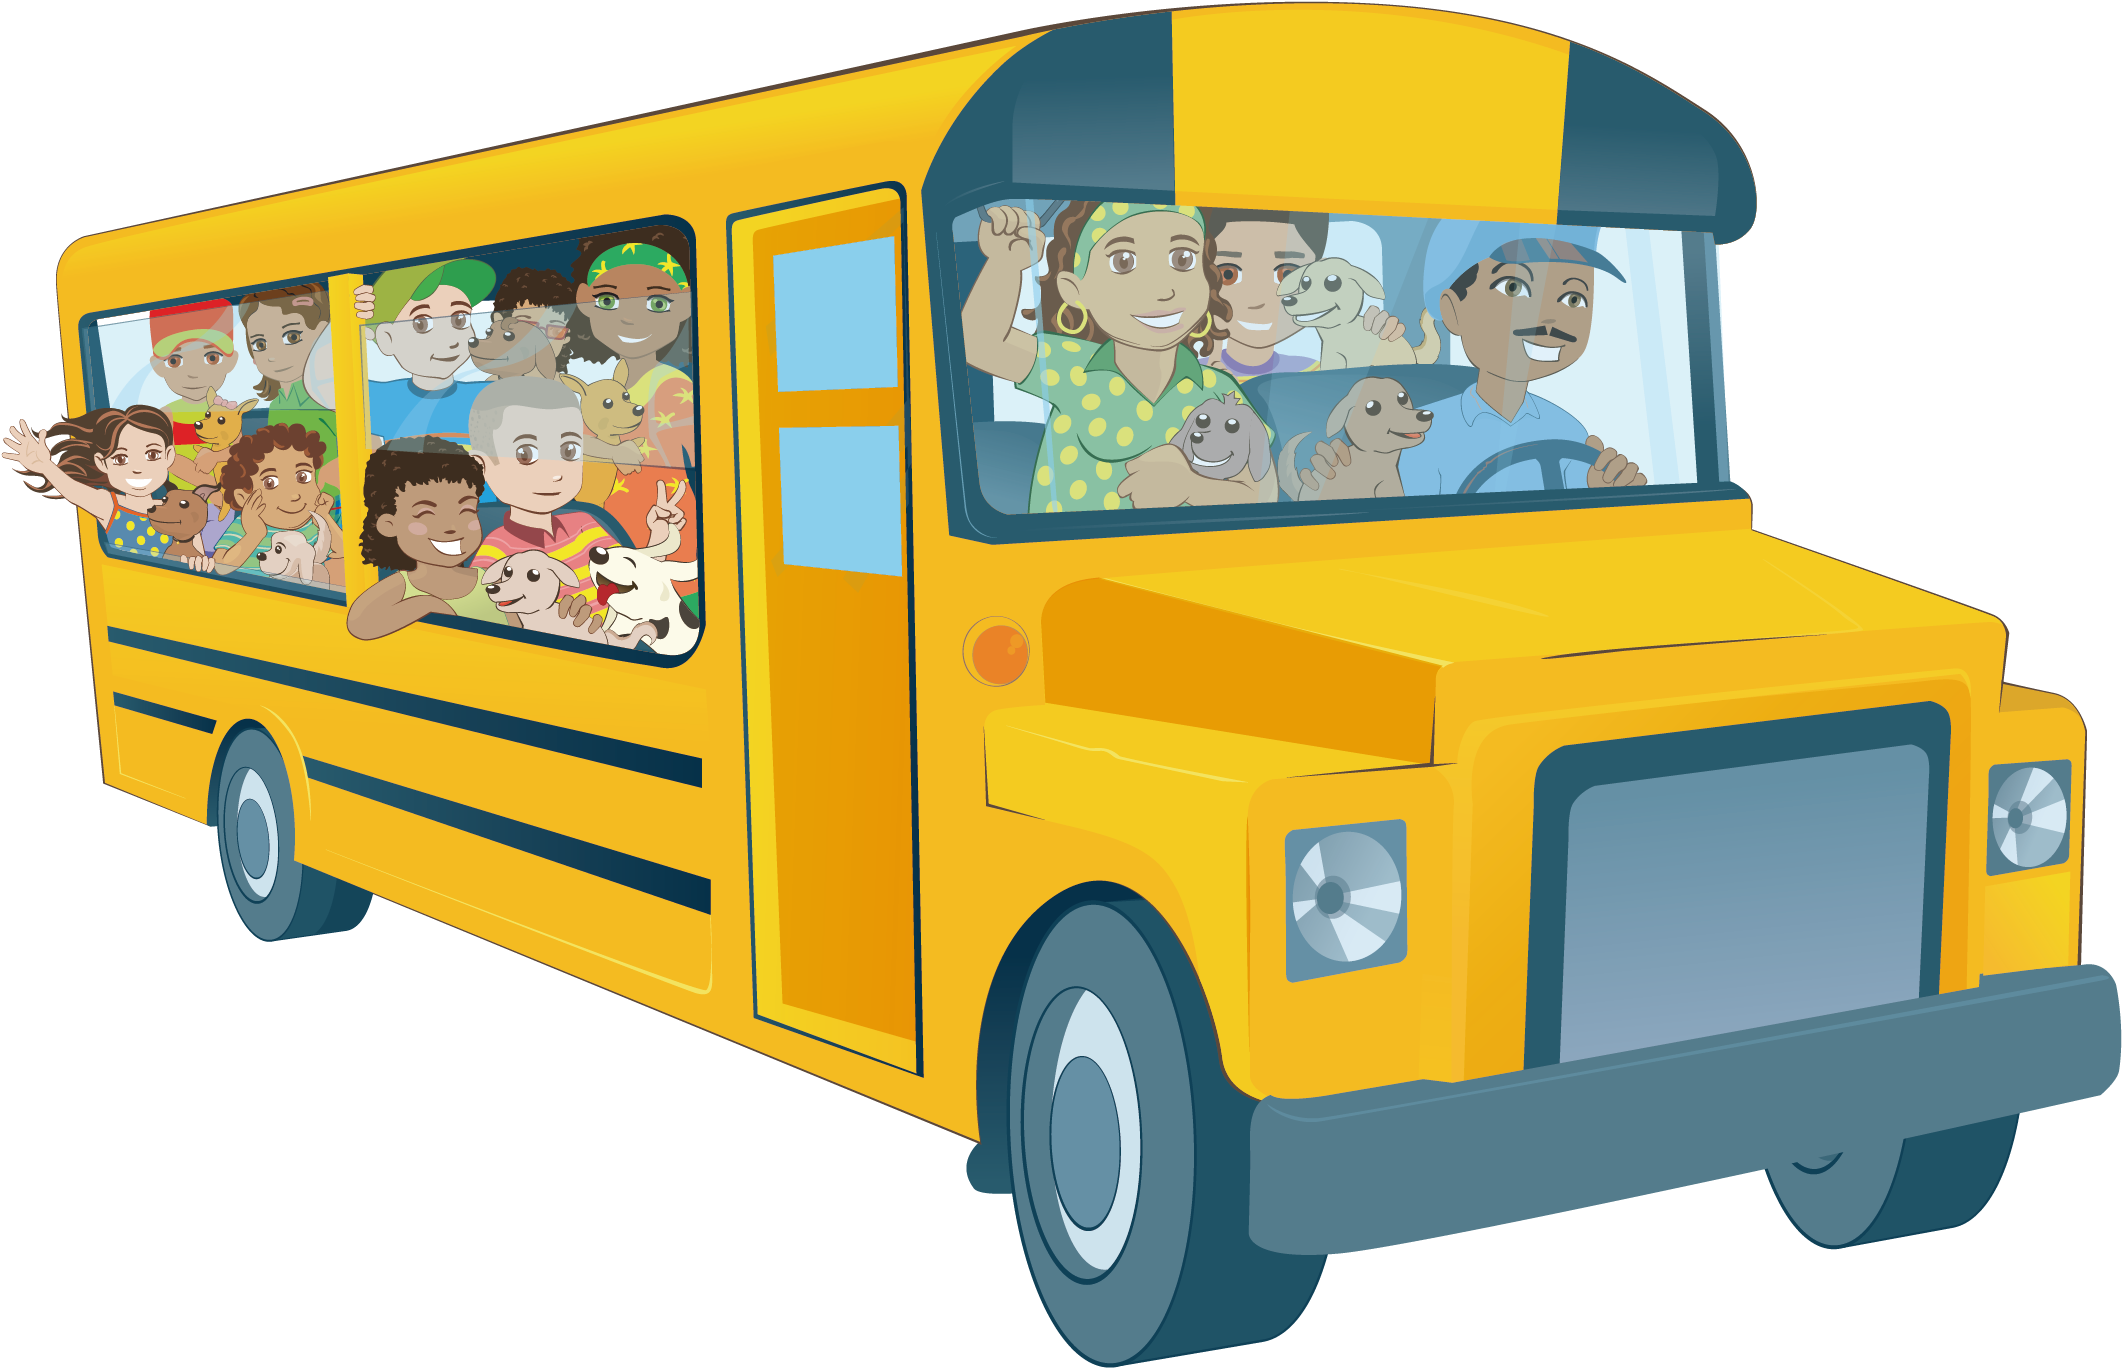 Автобус для детей. Автобус для детей на прозрачном фоне. Изображение автобуса для детей. Школьный автобус мультяшный.